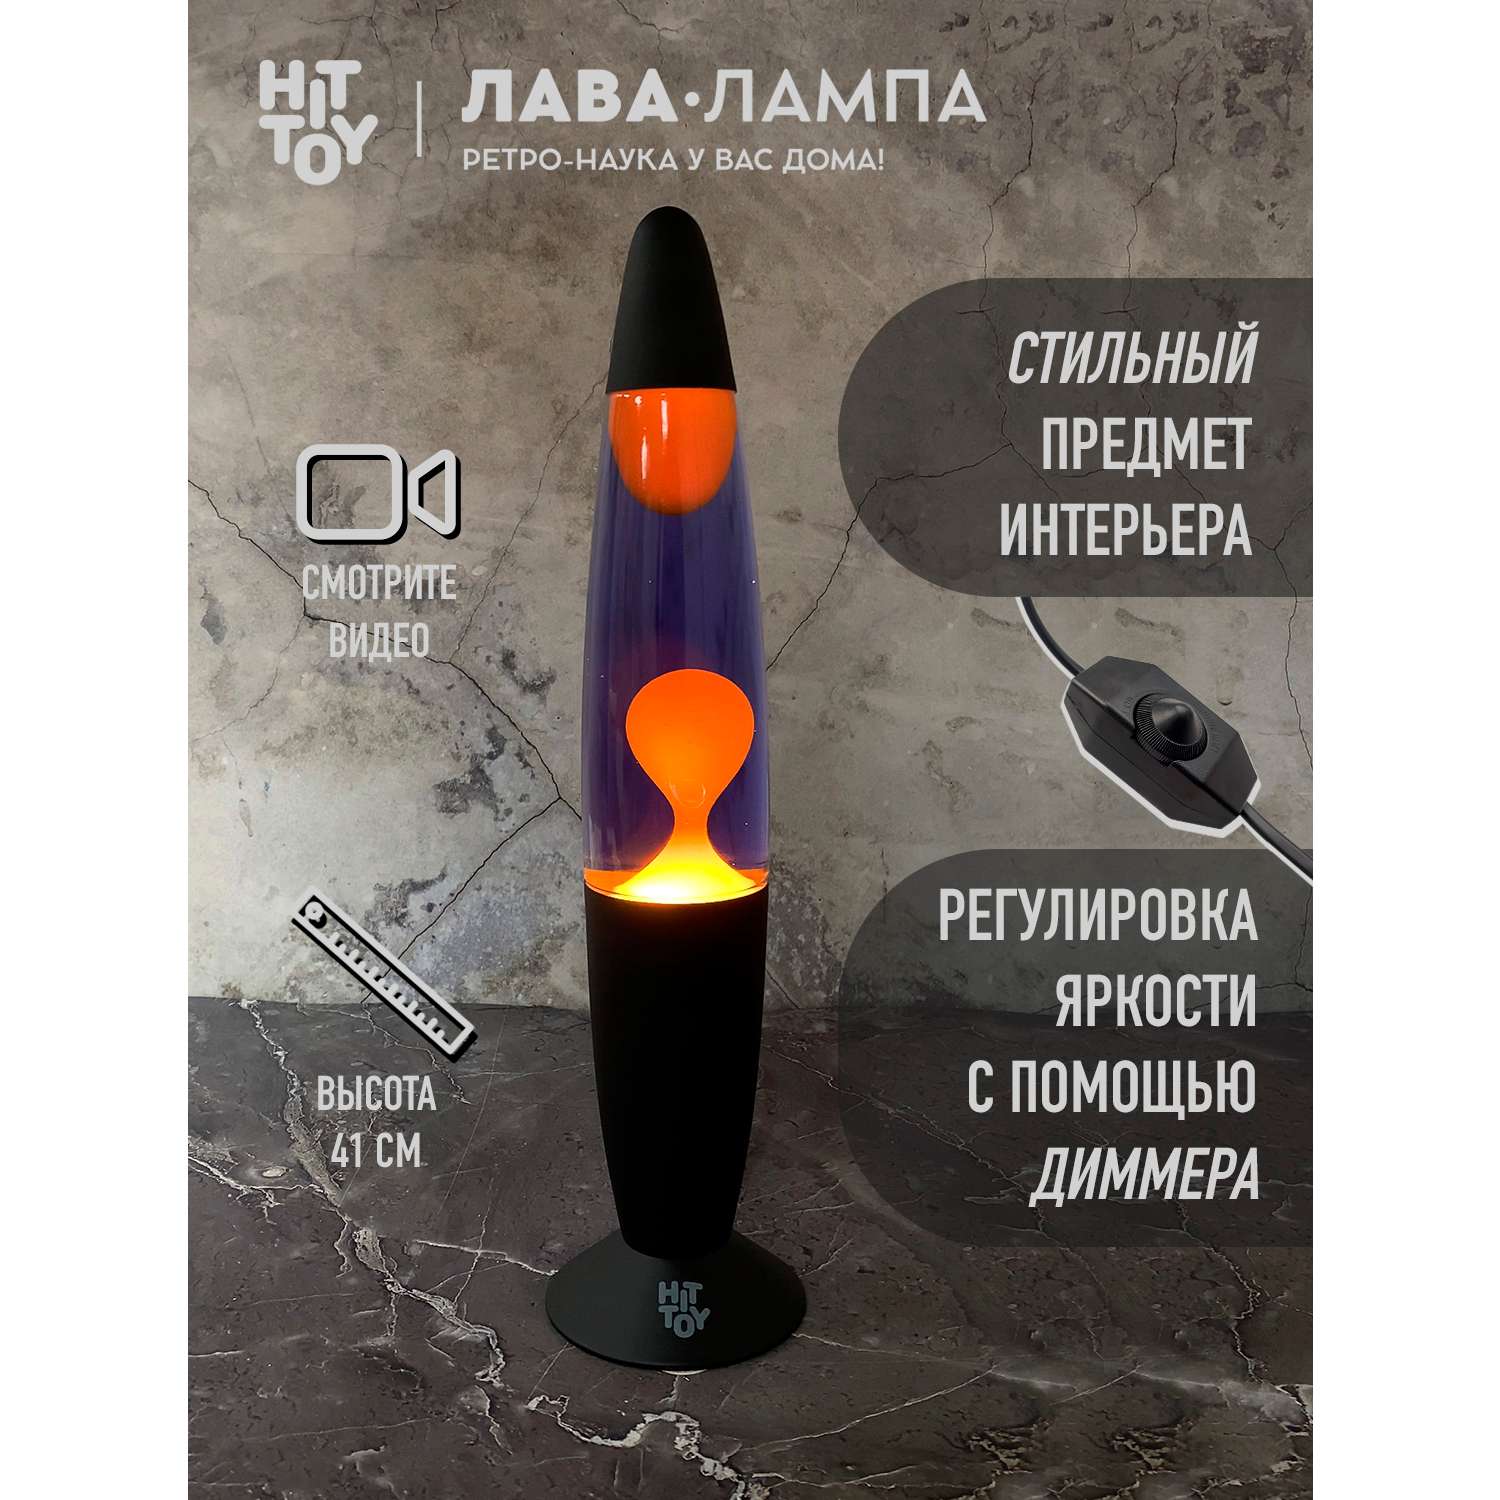 Светильник HitToy Лава-лампа черный корпус 41 см Фиолетовый/Оранжевый - фото 4